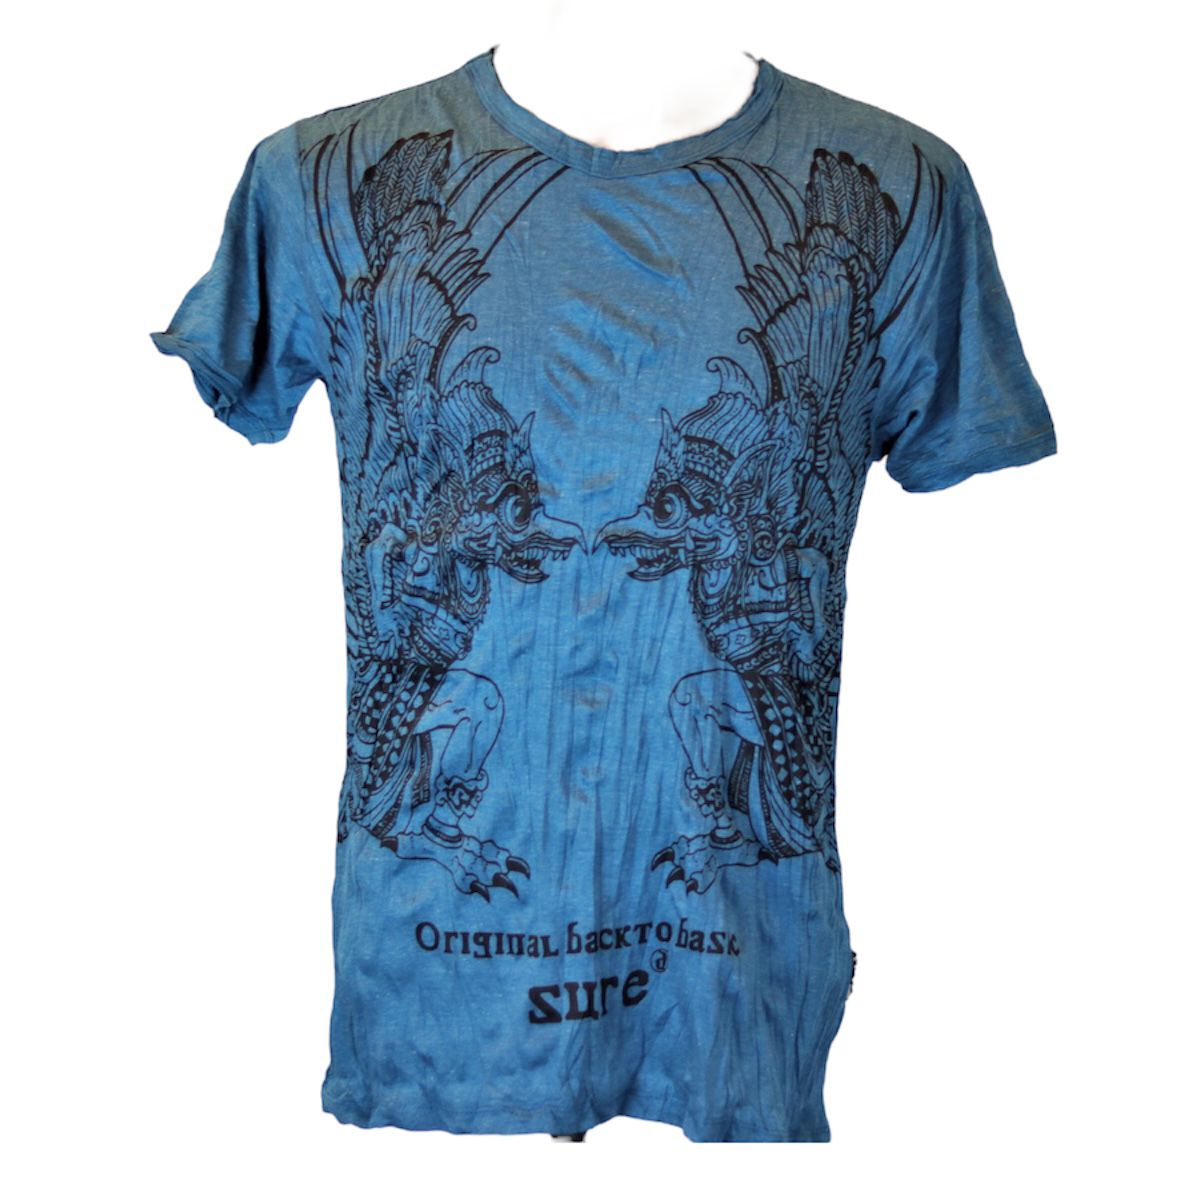 Garuda Men's T-Shirt by Sure